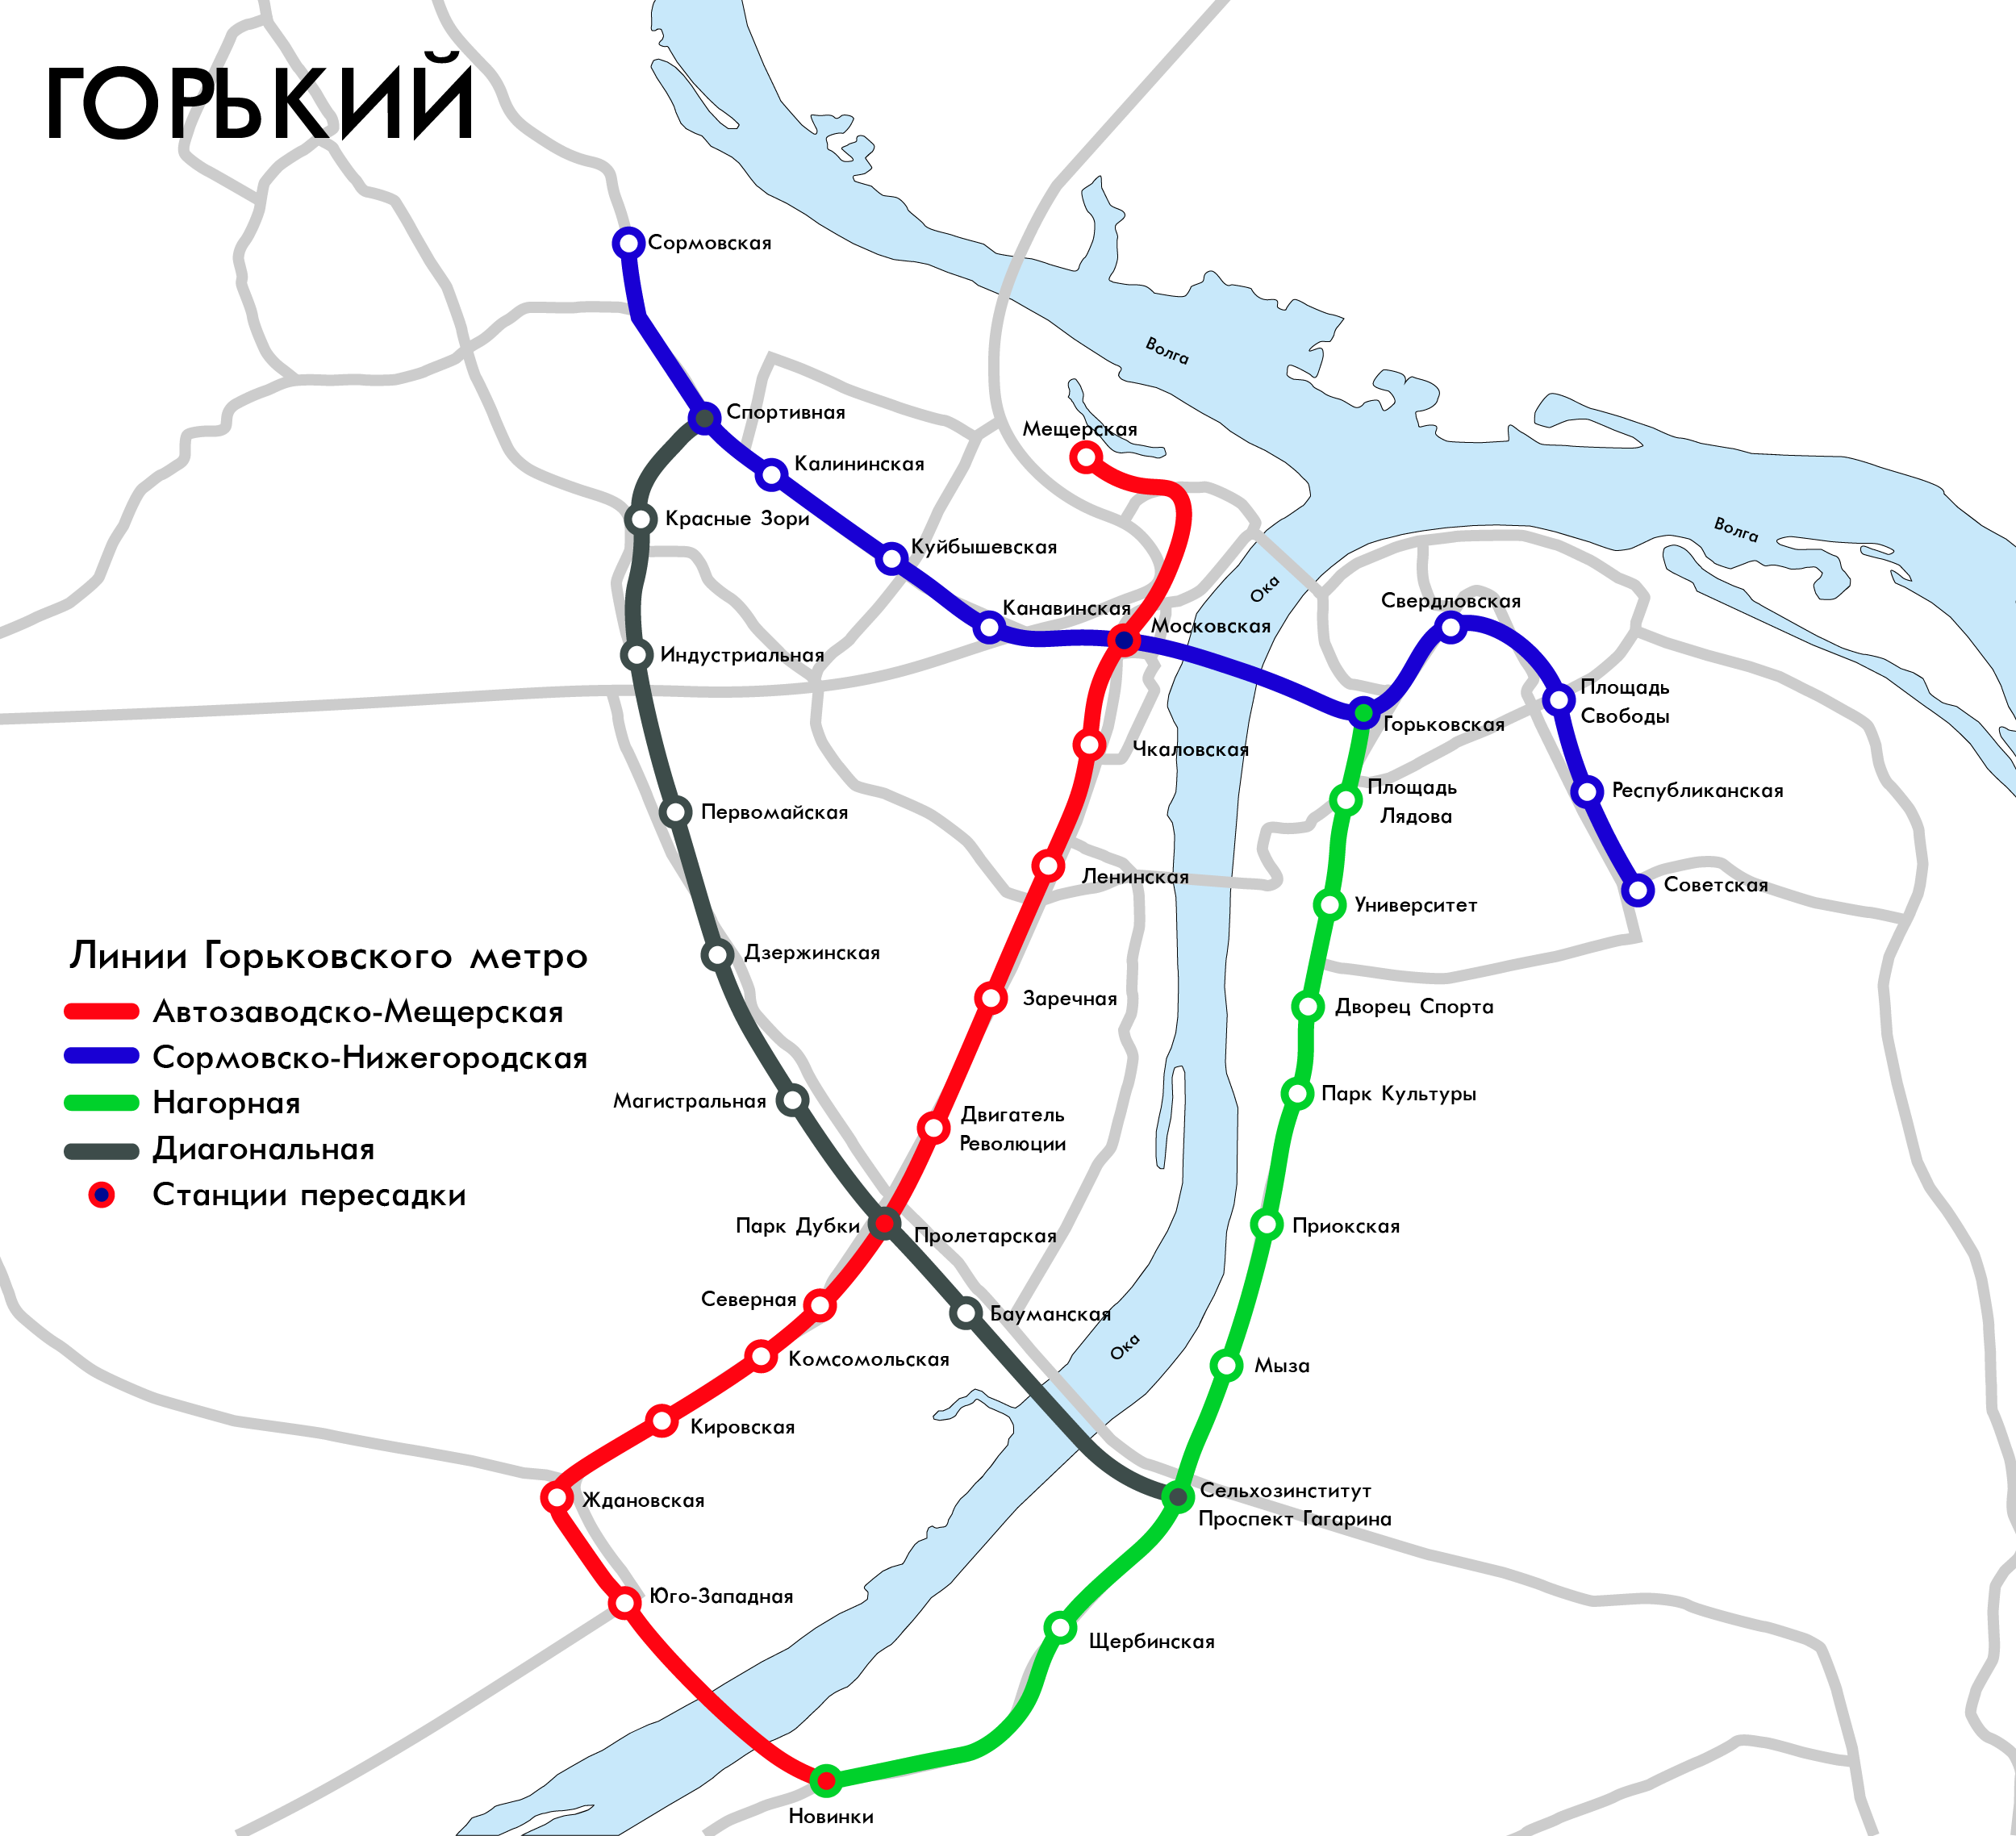 Схема Горьковского метрополитена по проекту 1982 года